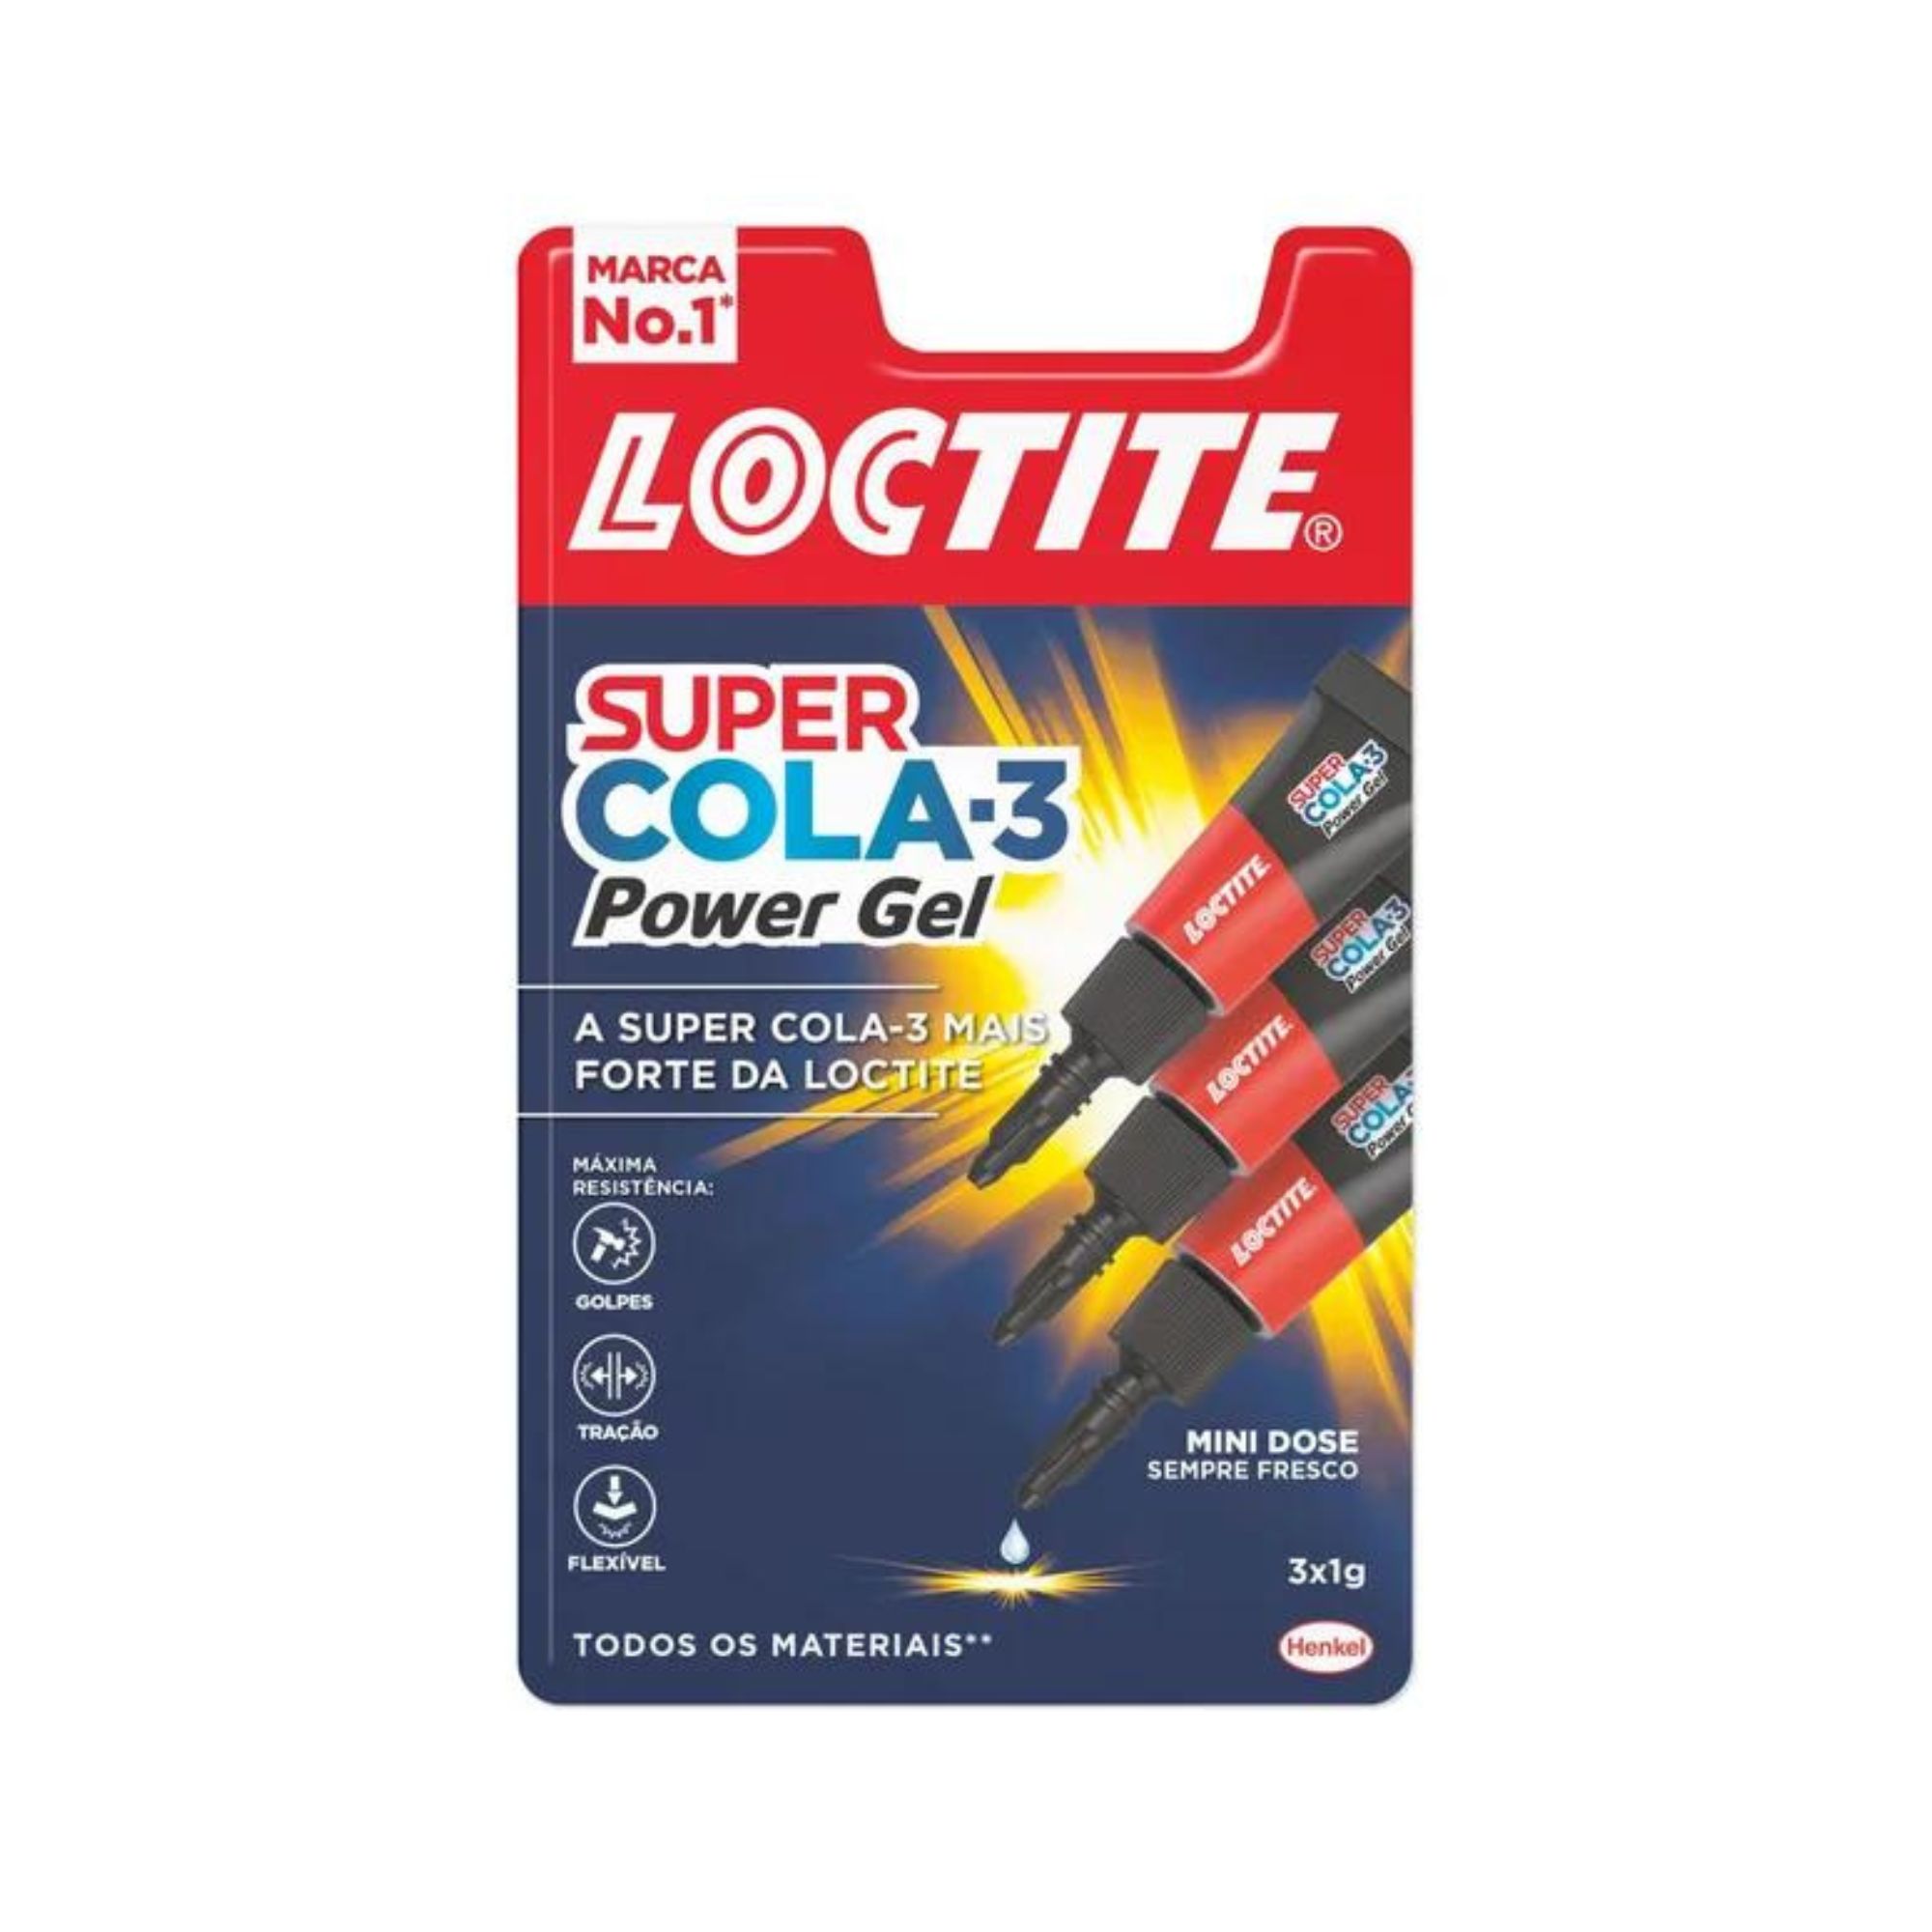 LOCTITE SUPER COLA 3 - 3x1g MINI TRIO POWER FLEX BLISTER